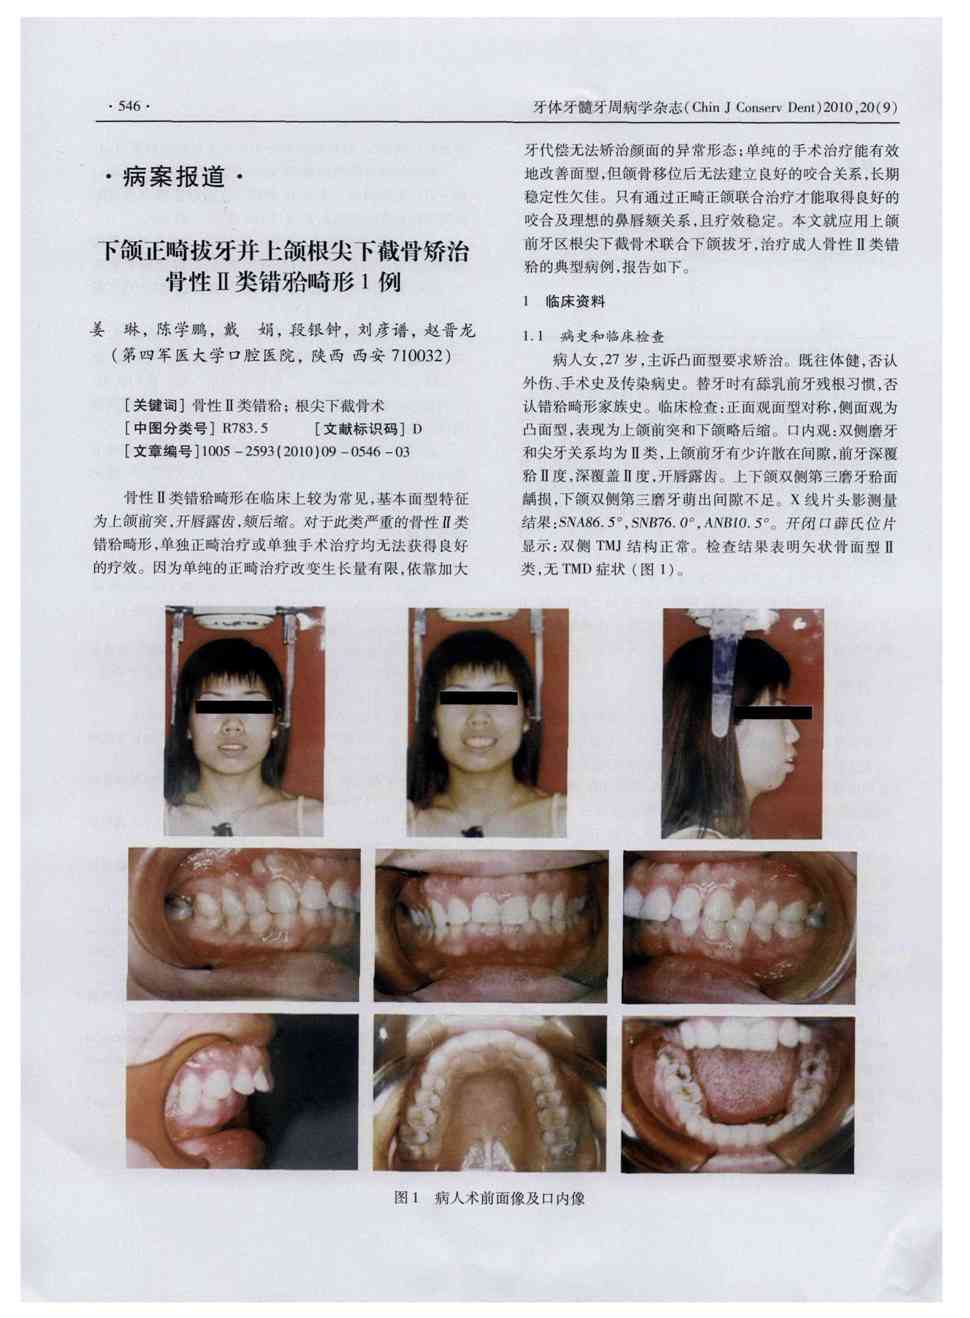 《牙体牙髓牙周病学杂志》2010年第9期546-548,共3页姜琳陈学鹏戴娟段